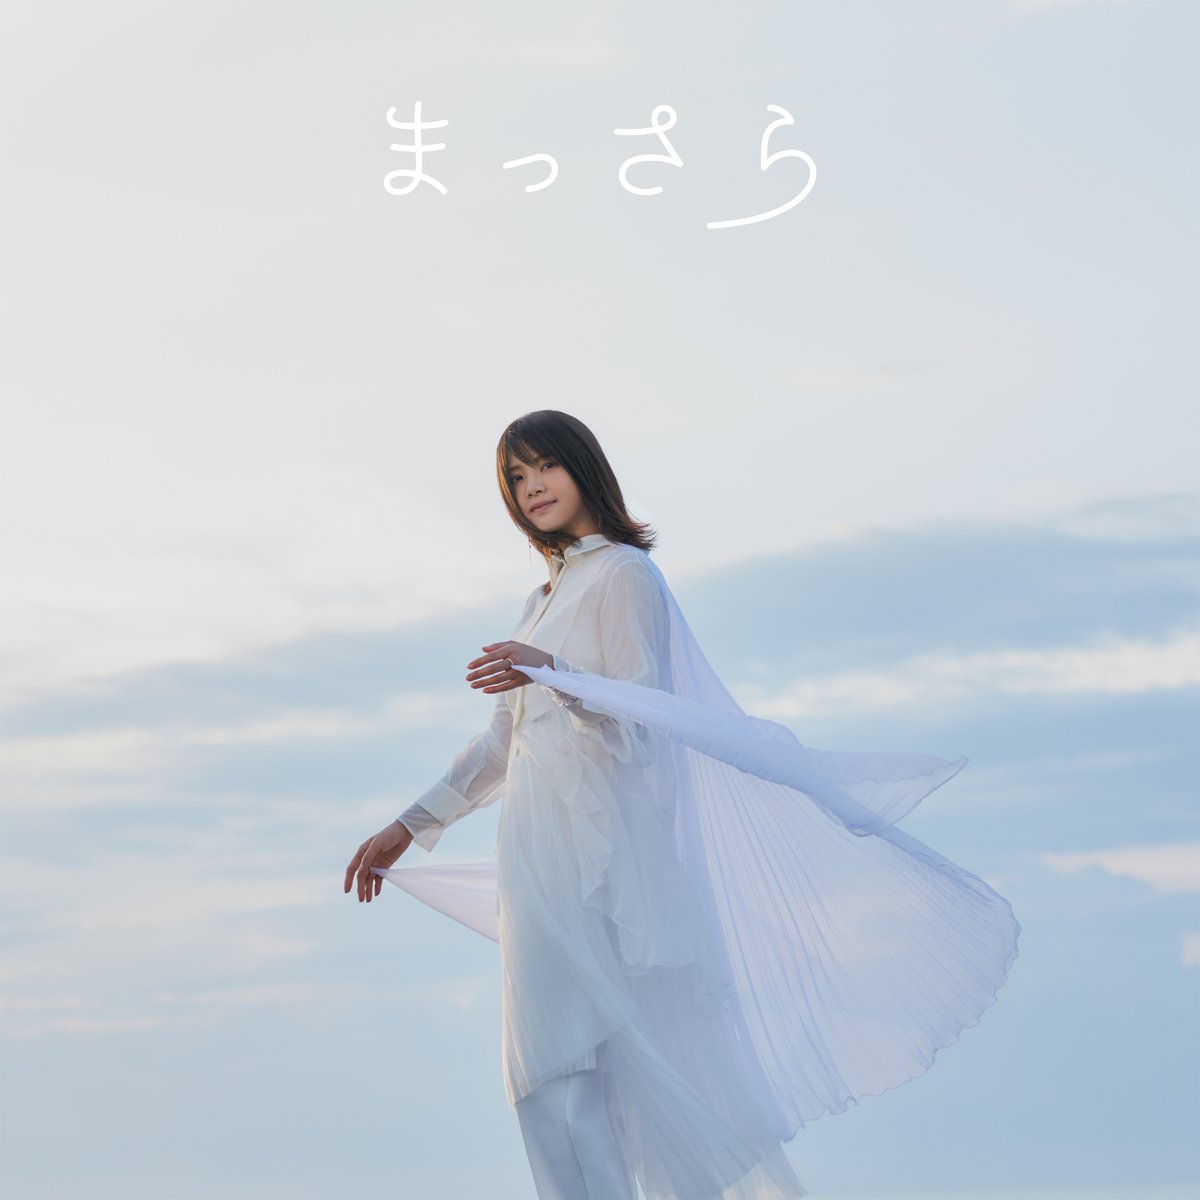 Cover art for『Kiyoe Yoshioka - まっさら』from the release『Massara